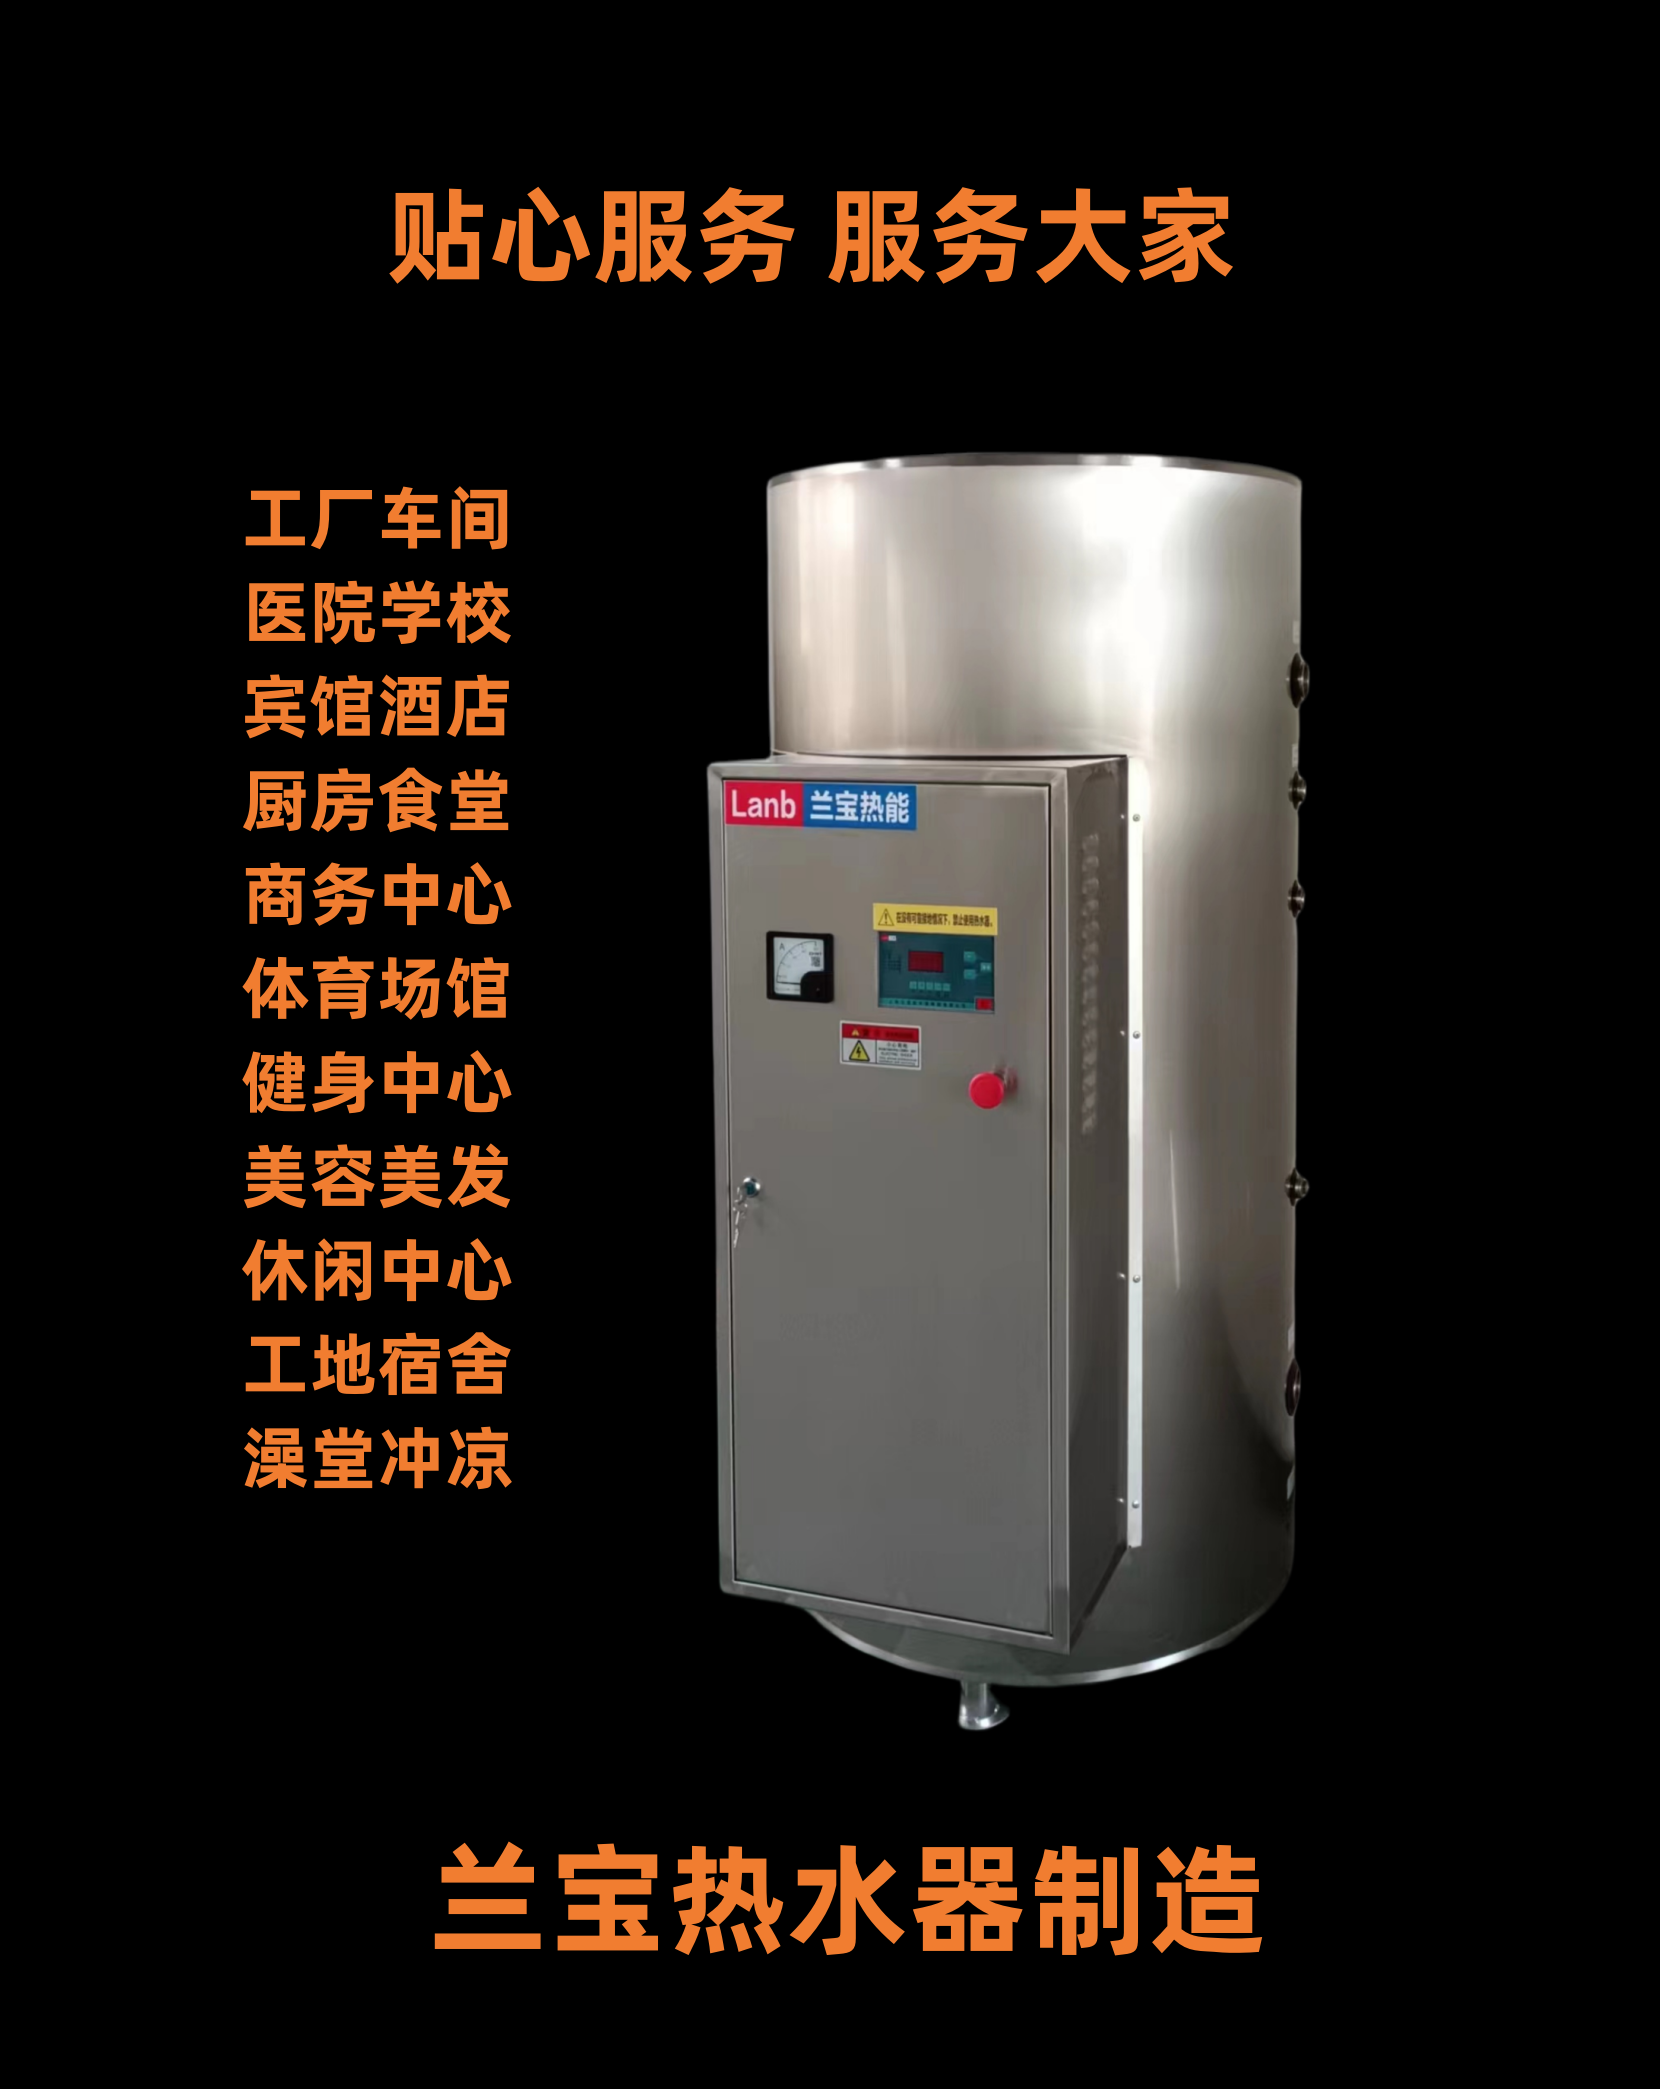 工业电热水炉电热水锅炉容量300L功率45kw 适用于工厂车间食堂餐饮